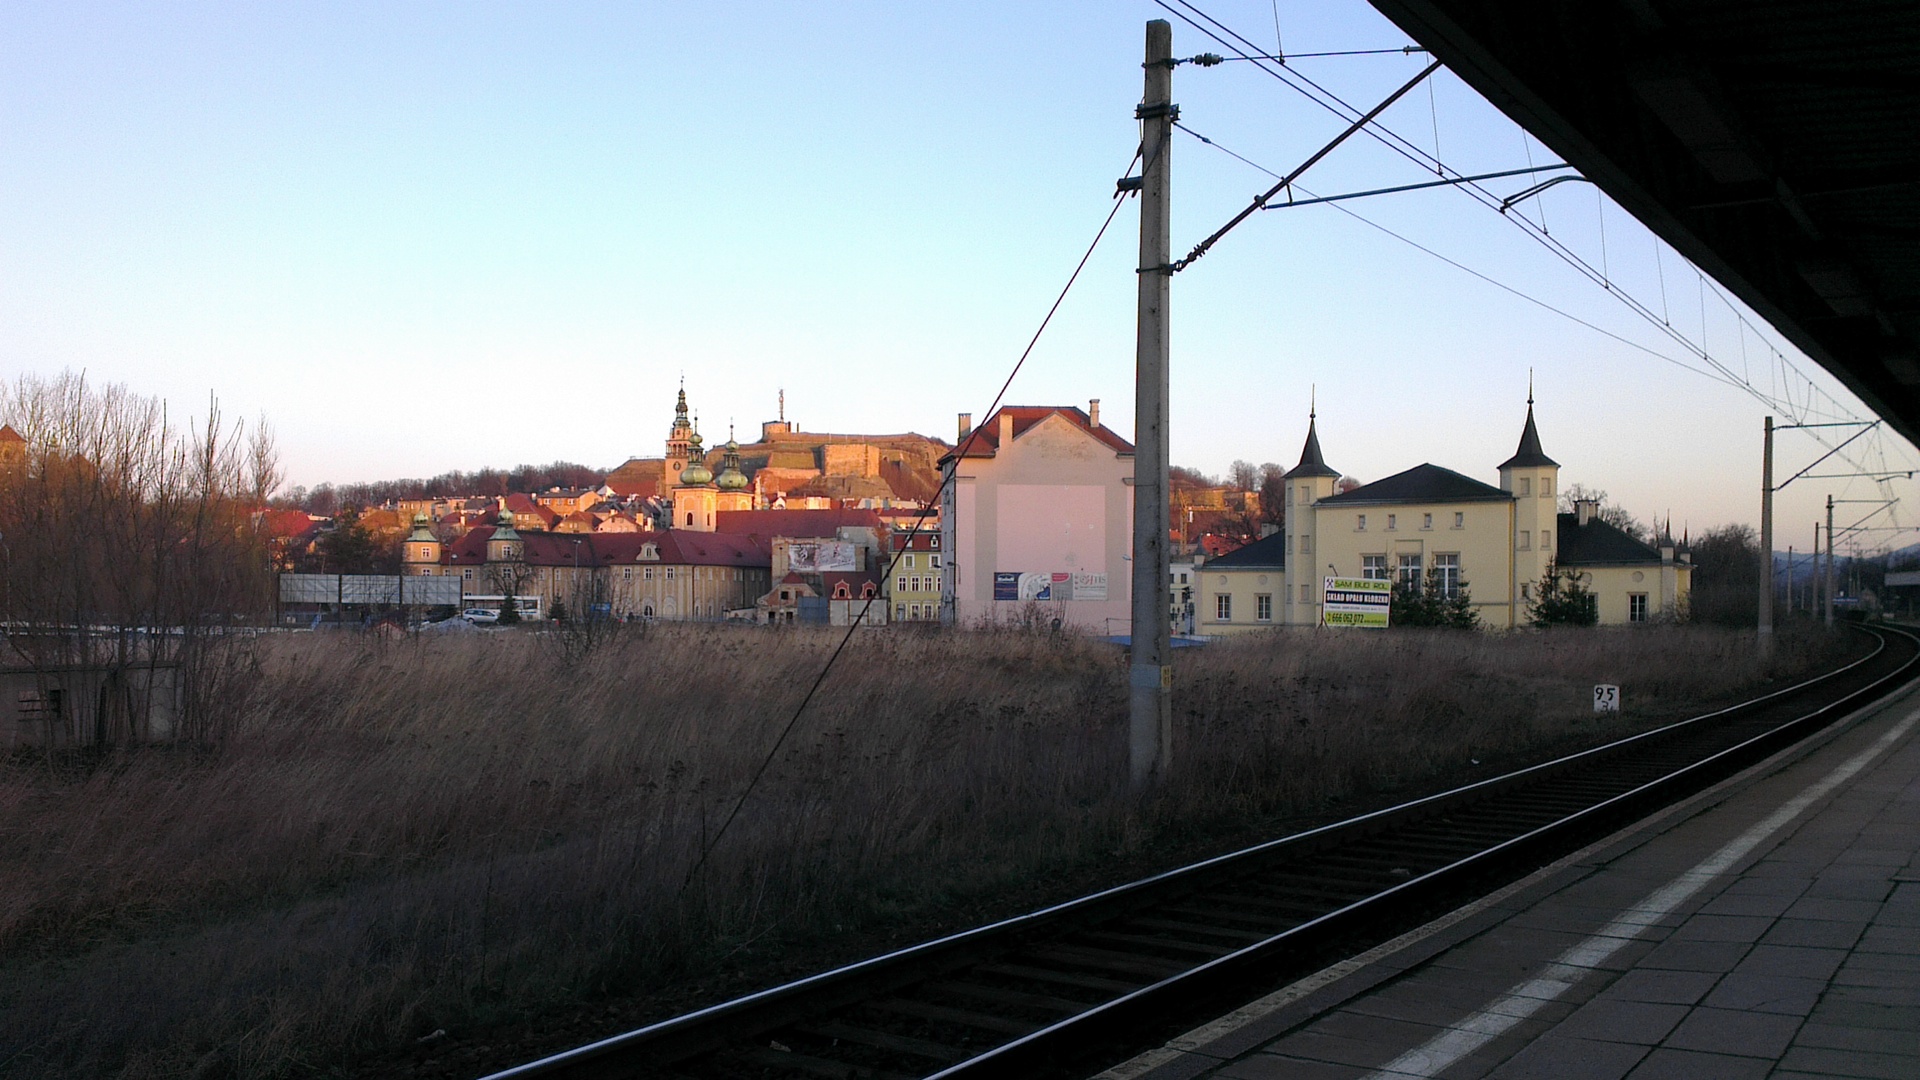 View from Kłodzko Miasto